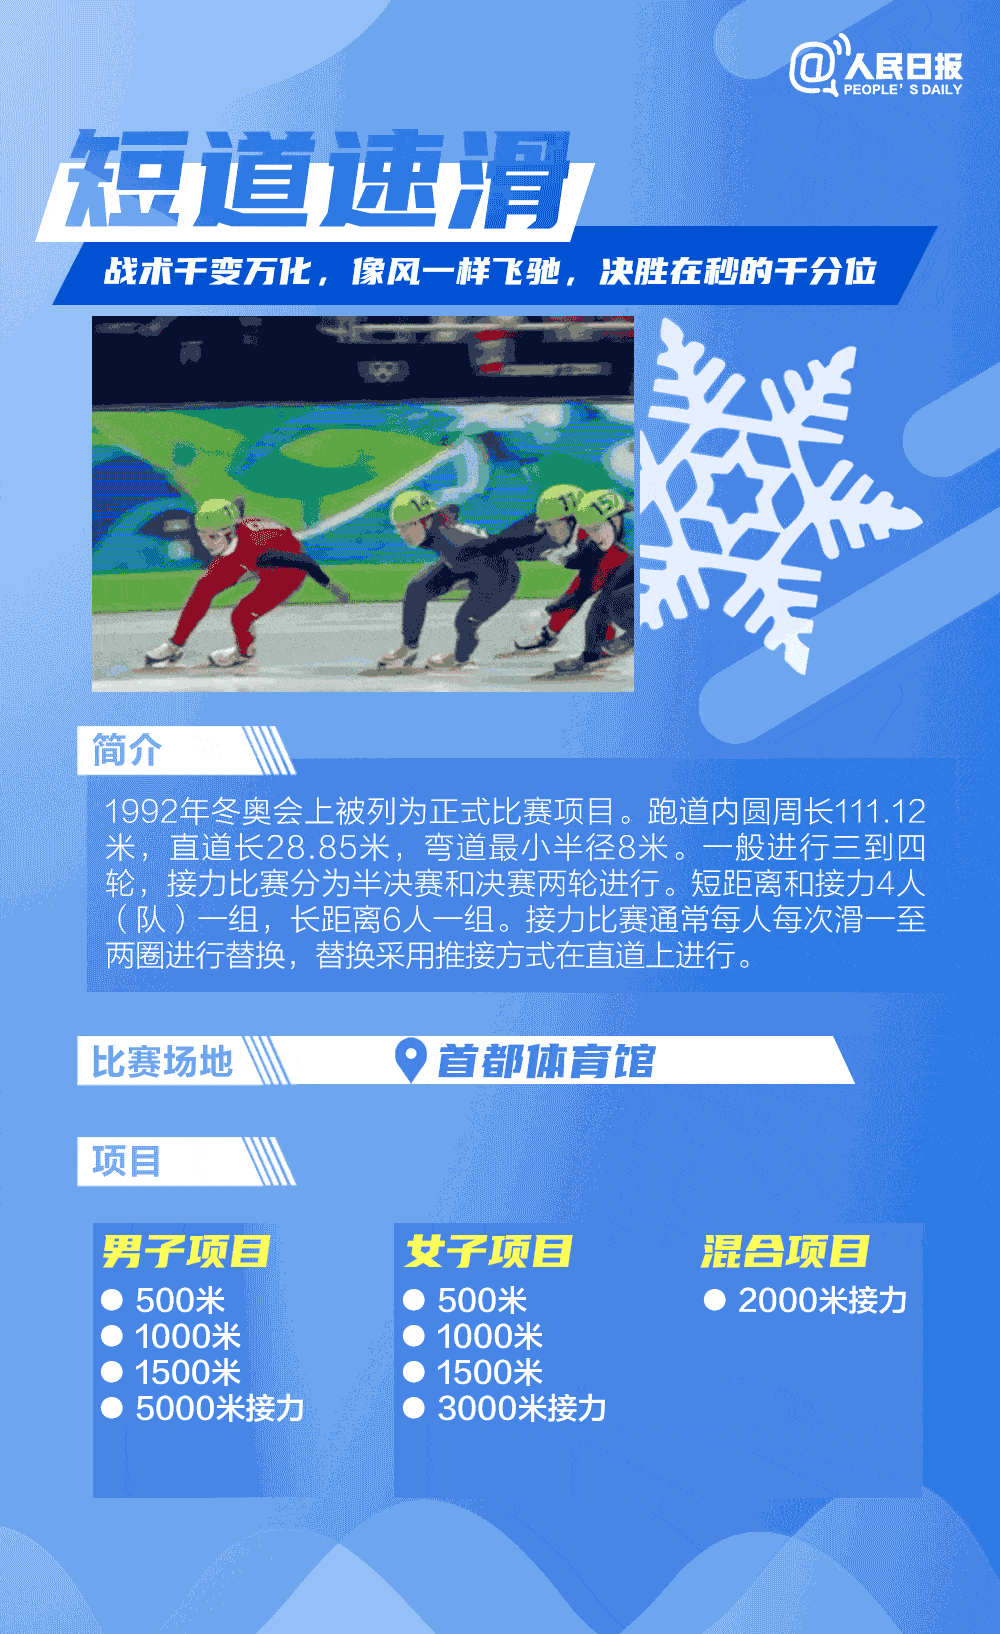 冬奥 | 一次看懂北京冬奥15个比赛项目